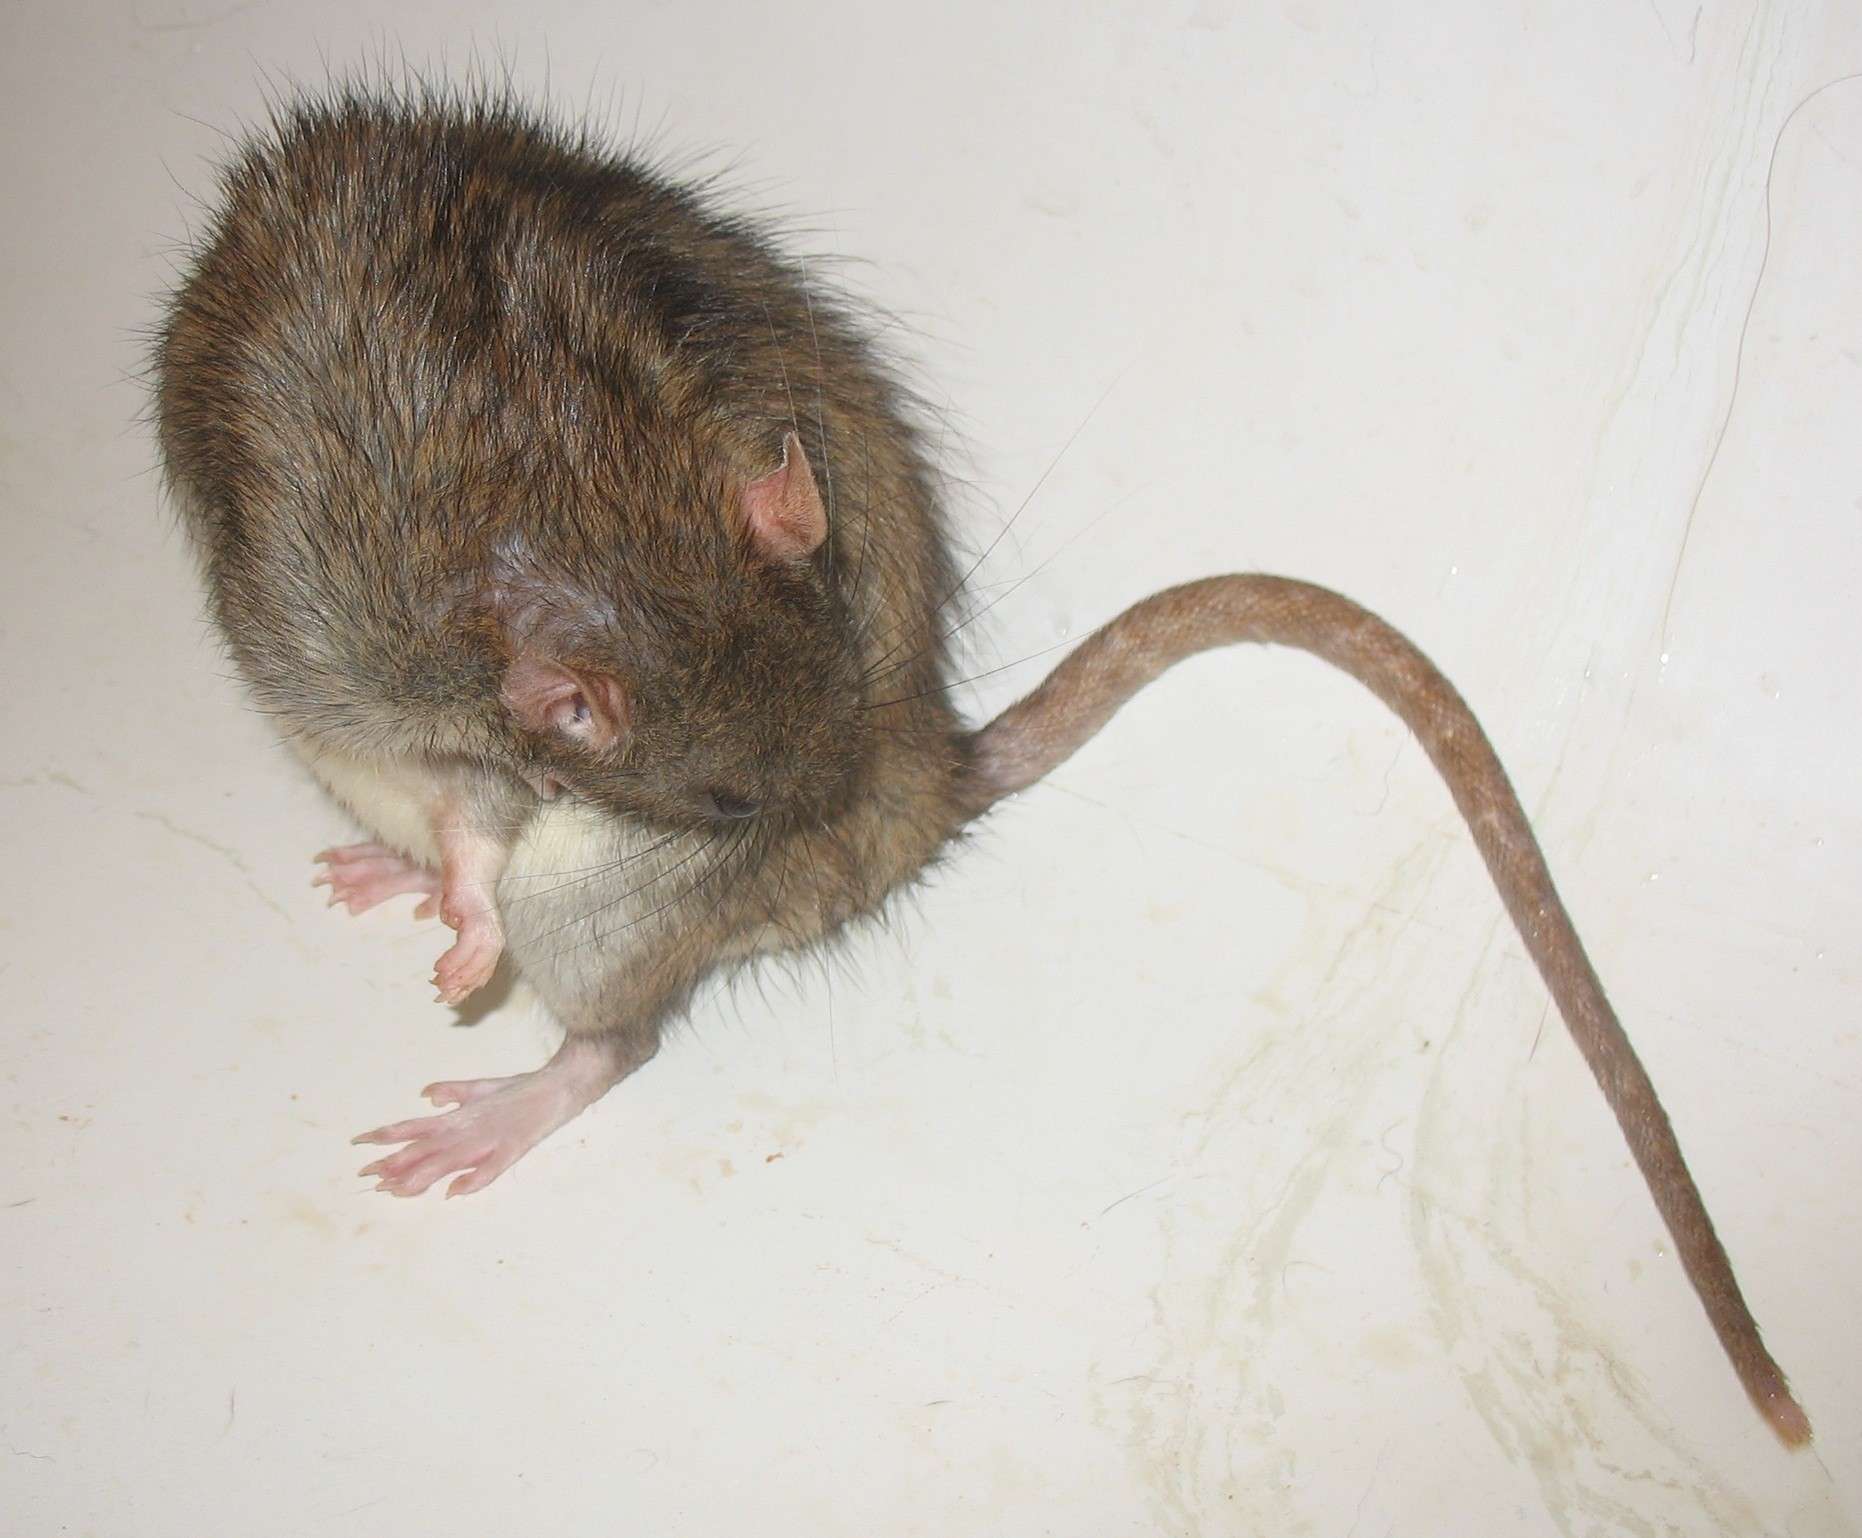 toilettage propreté rat nu